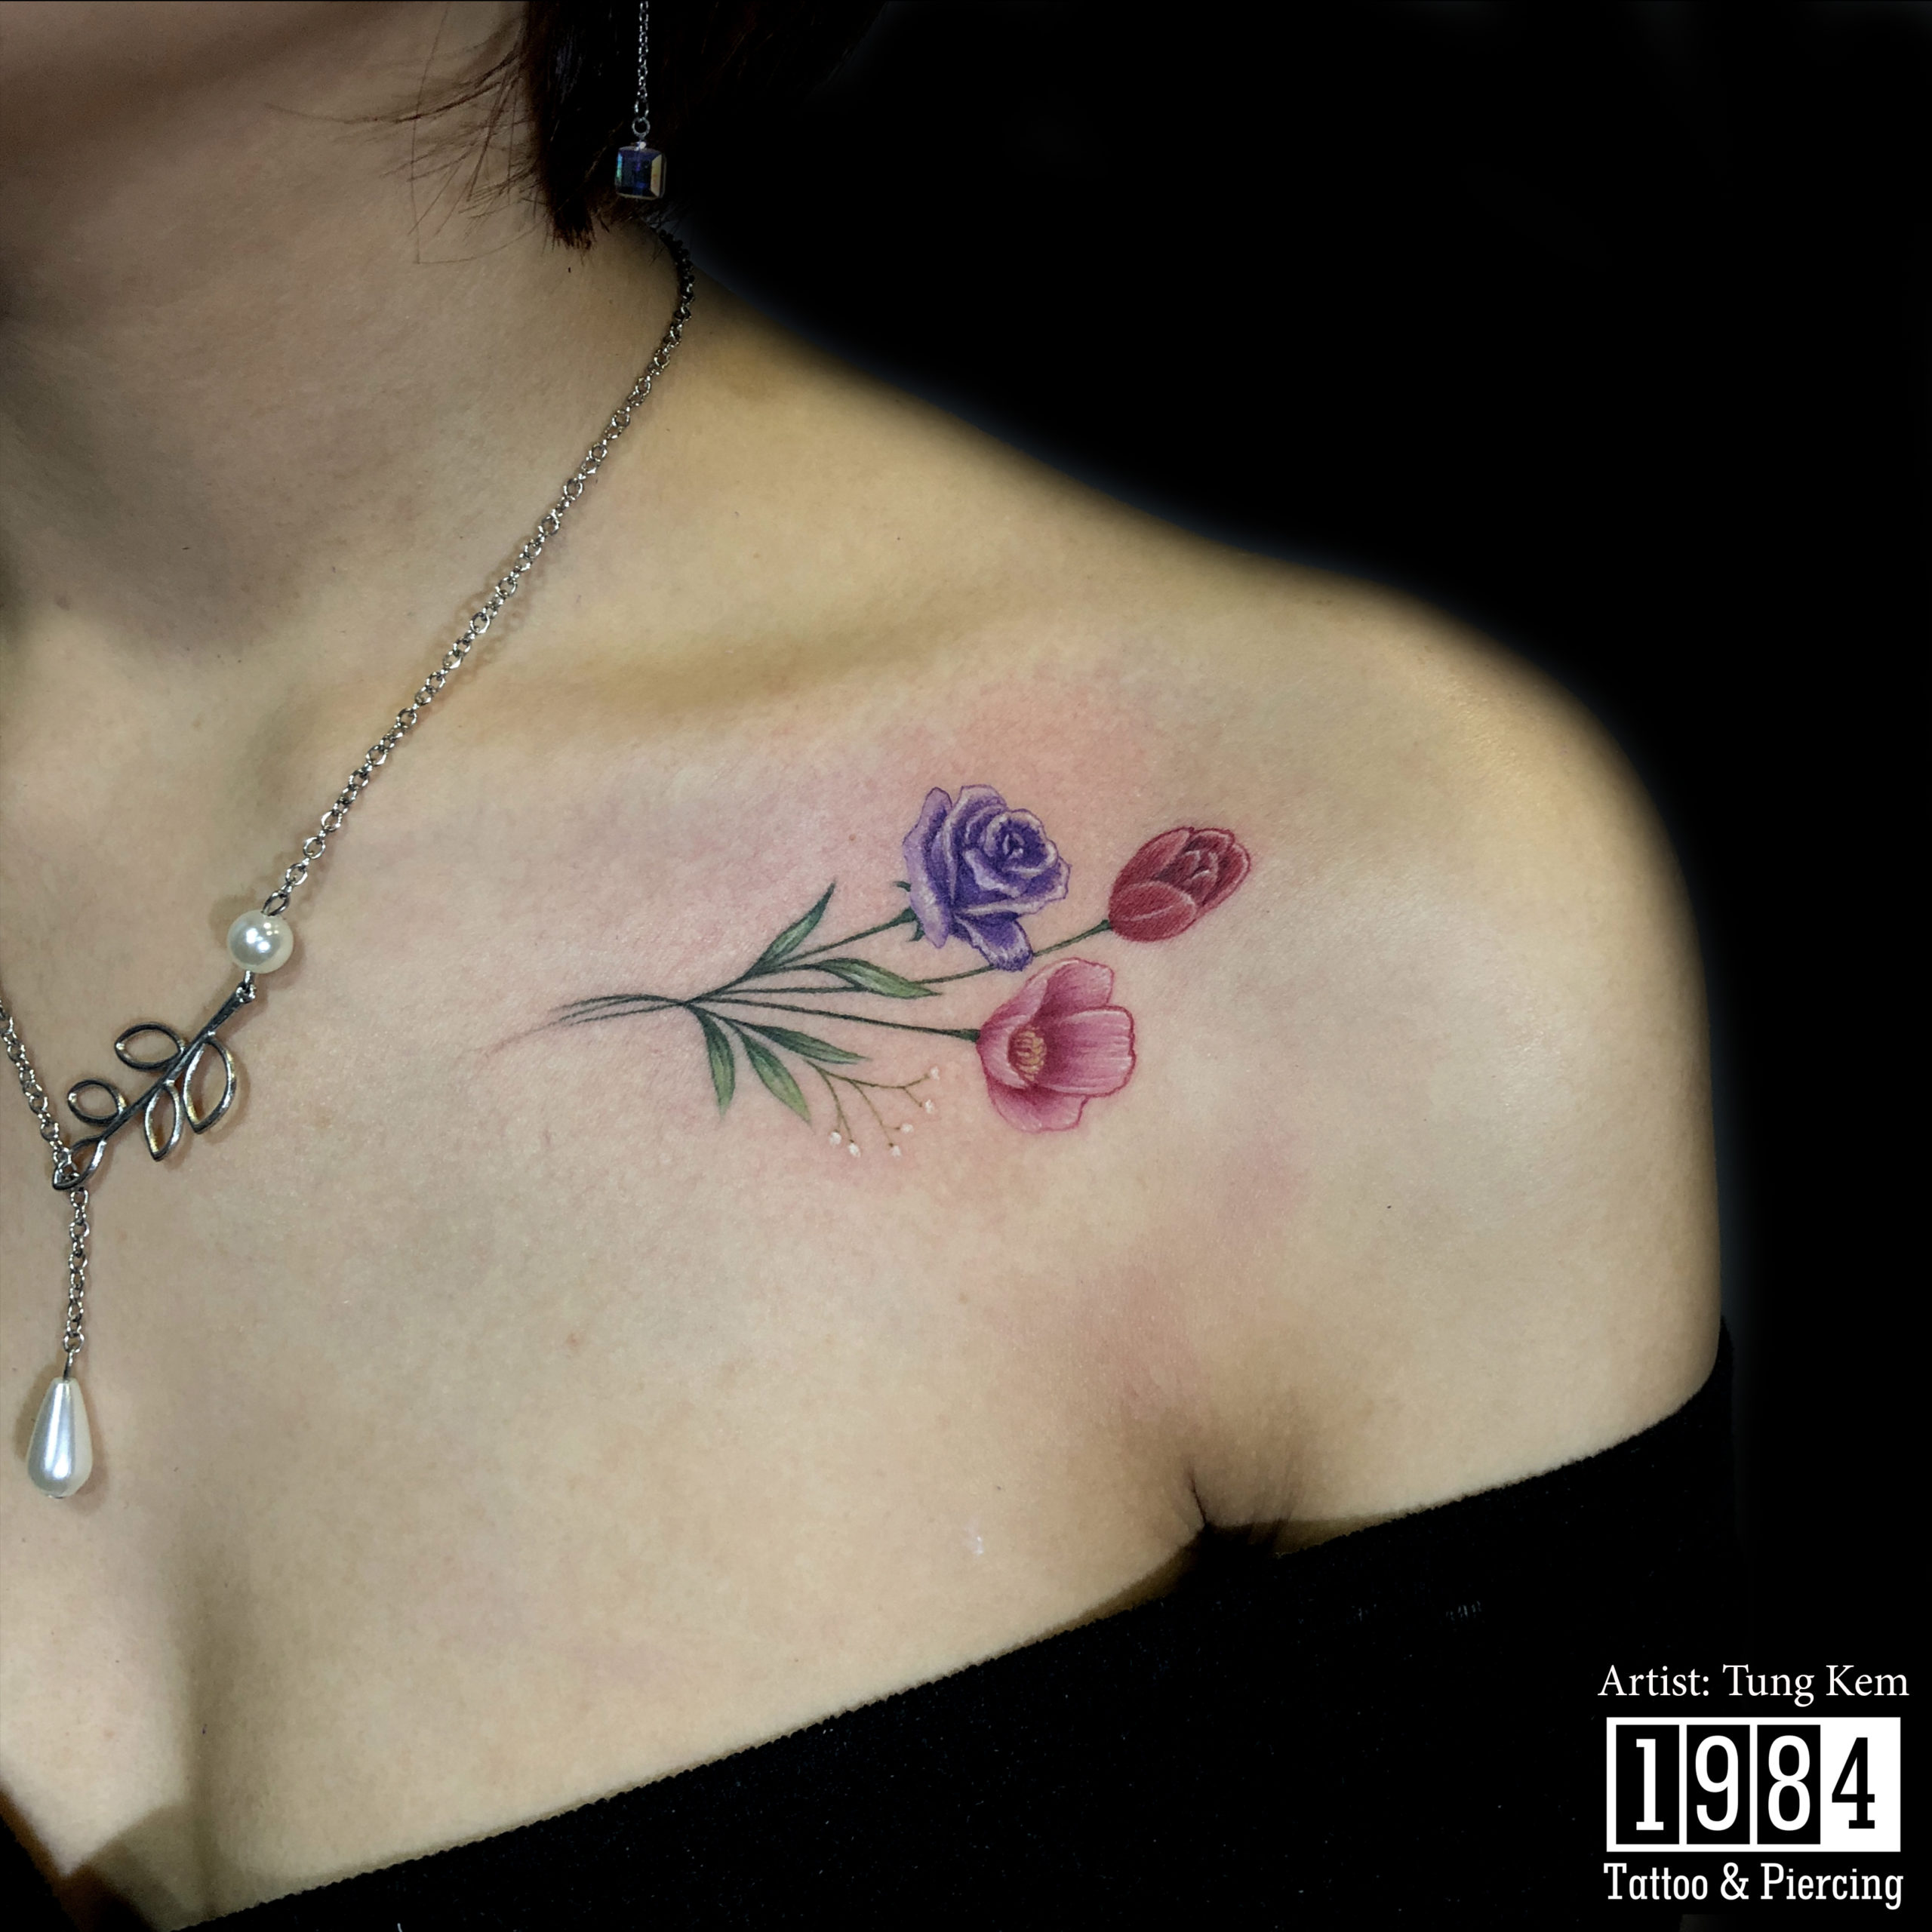 Ngất Ngây Với 7 Hình Xăm Hoa Nhỏ Cho Nữ Đẹp Và Ý Nghĩa | 1984 Studio -  Tattoo & Piercing